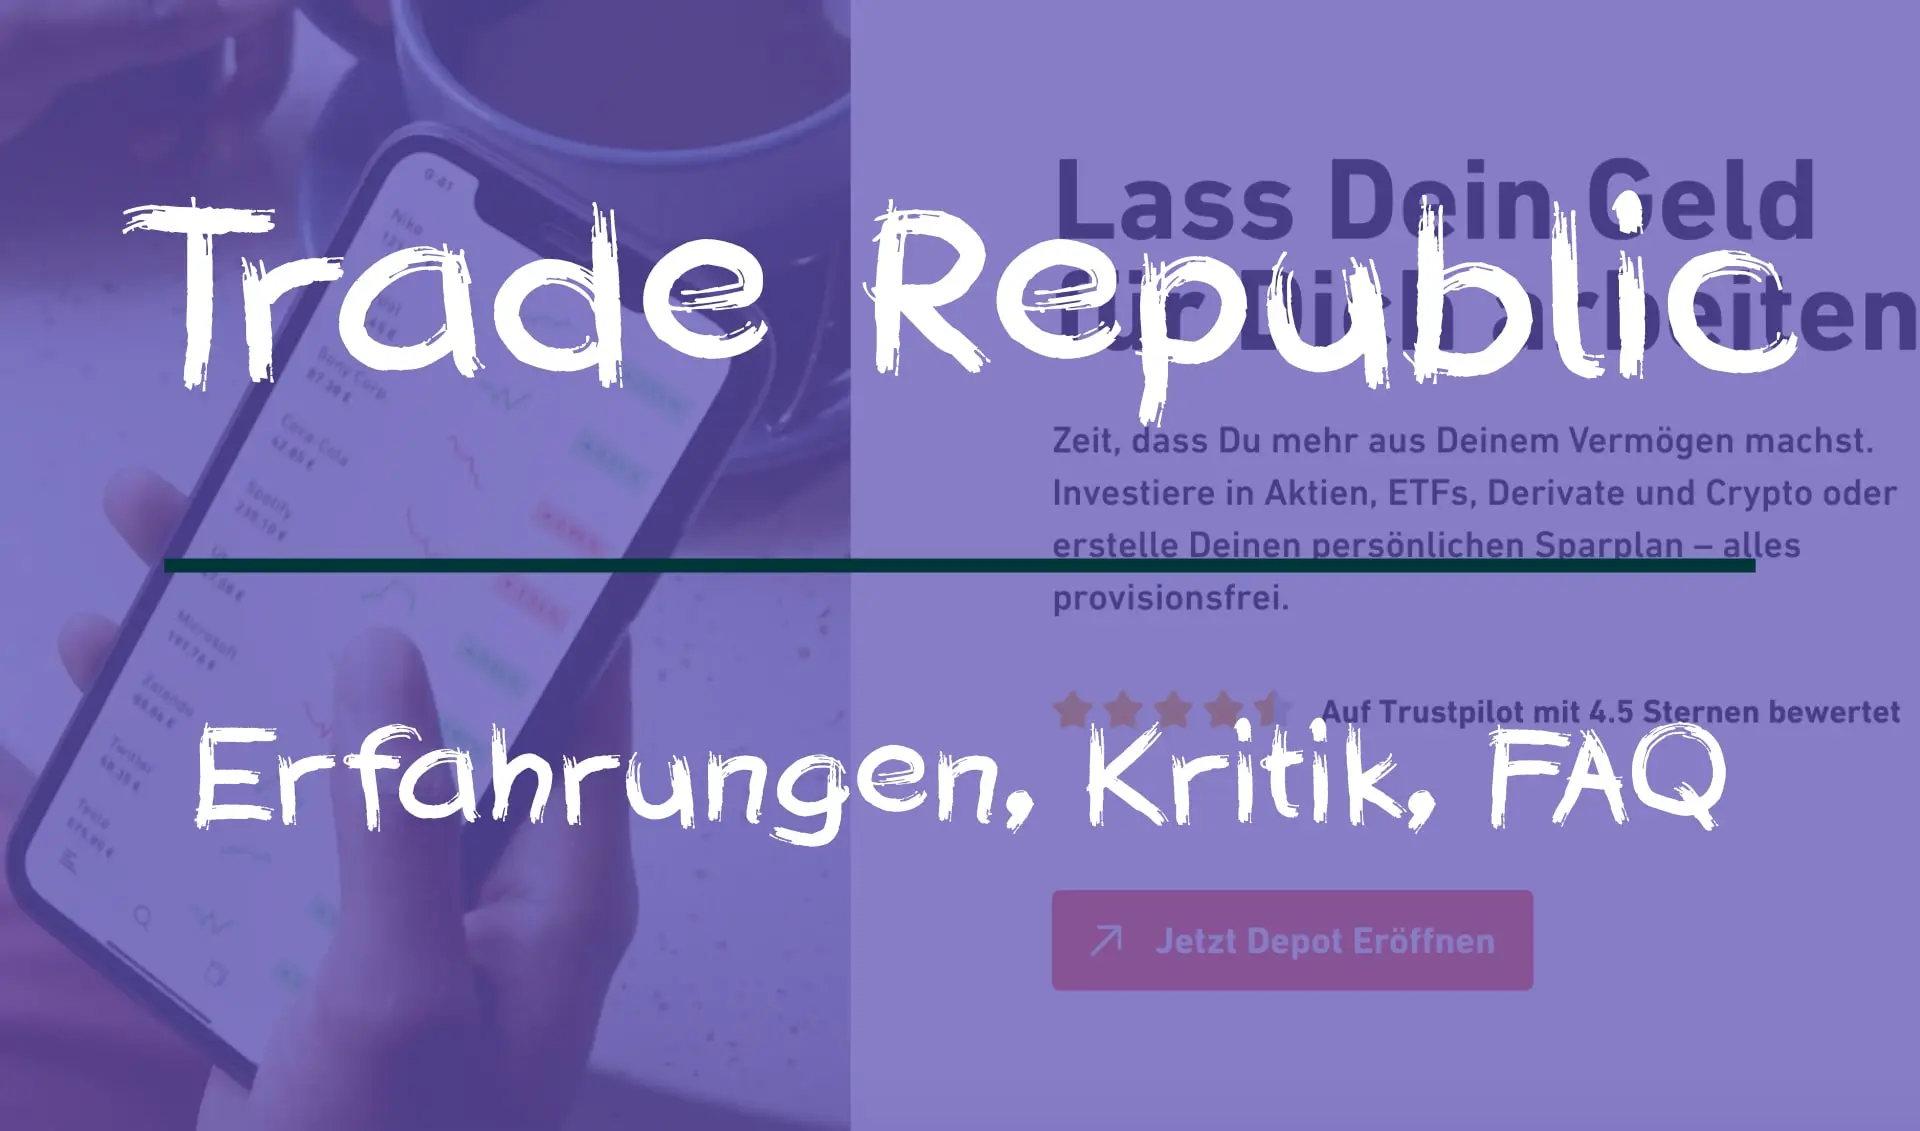 Trade Republic: Erfahrungen, Kritik, FAQ